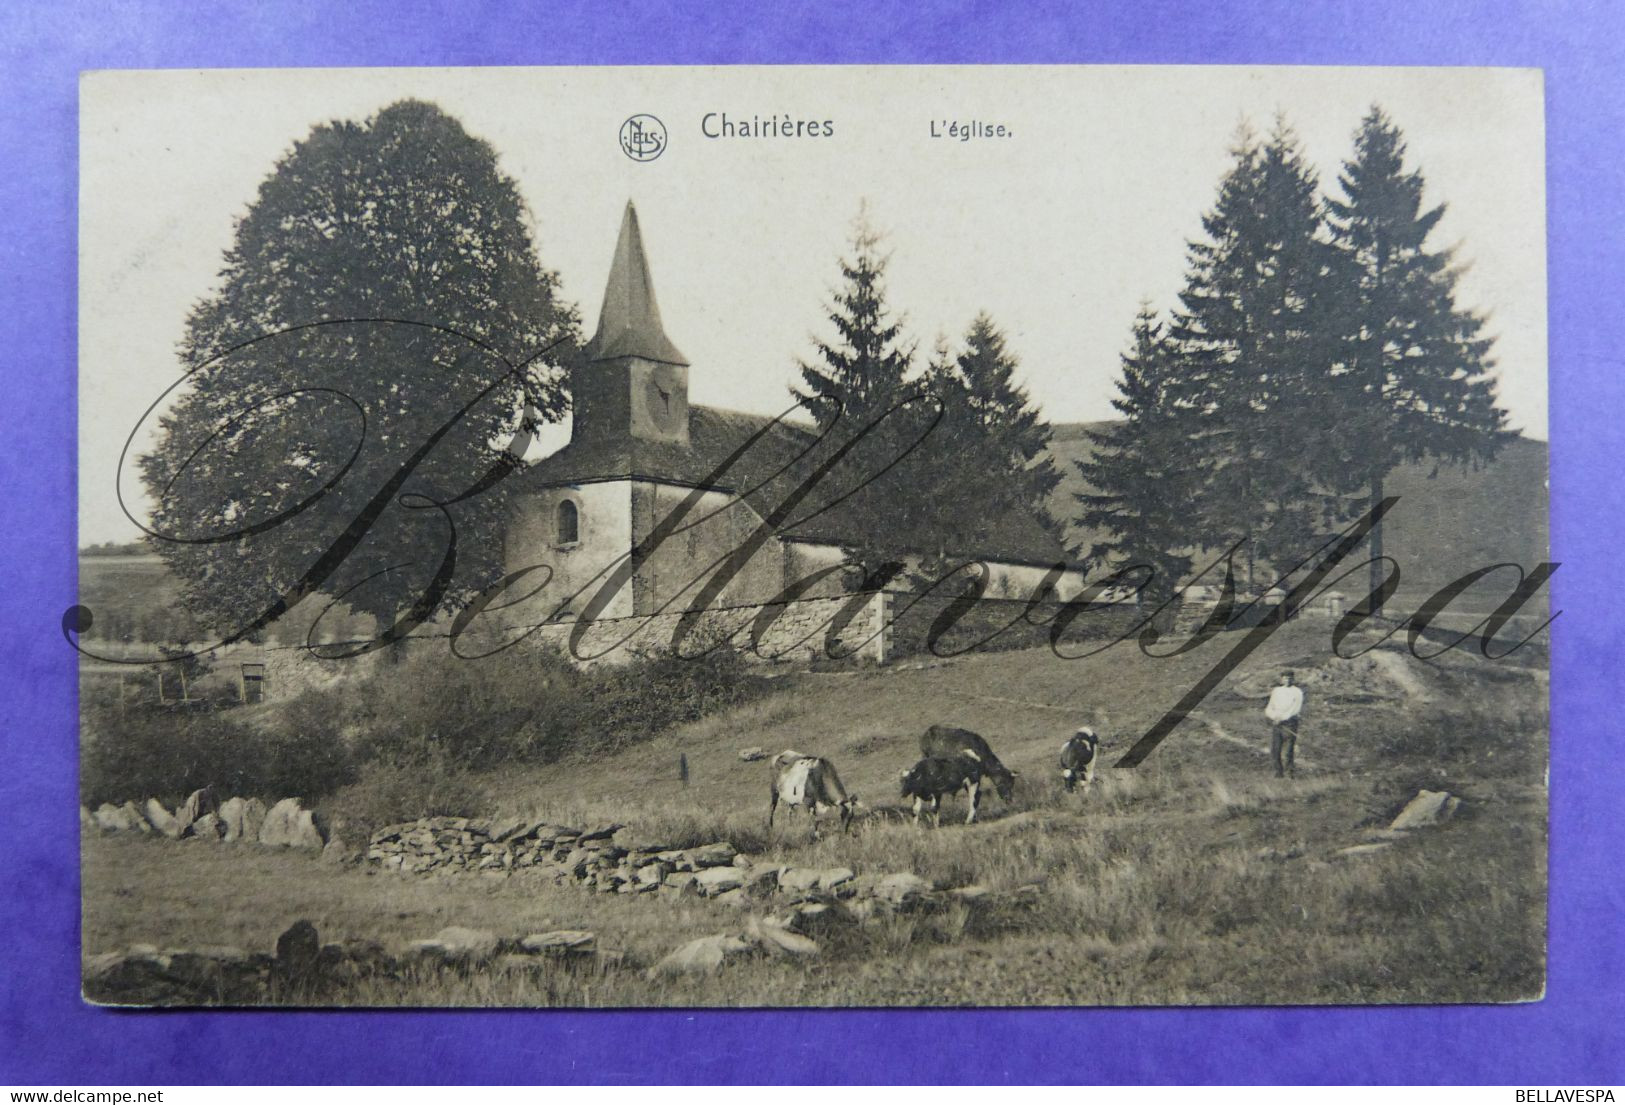 Chairières L'Eglise - Vresse-sur-Semois